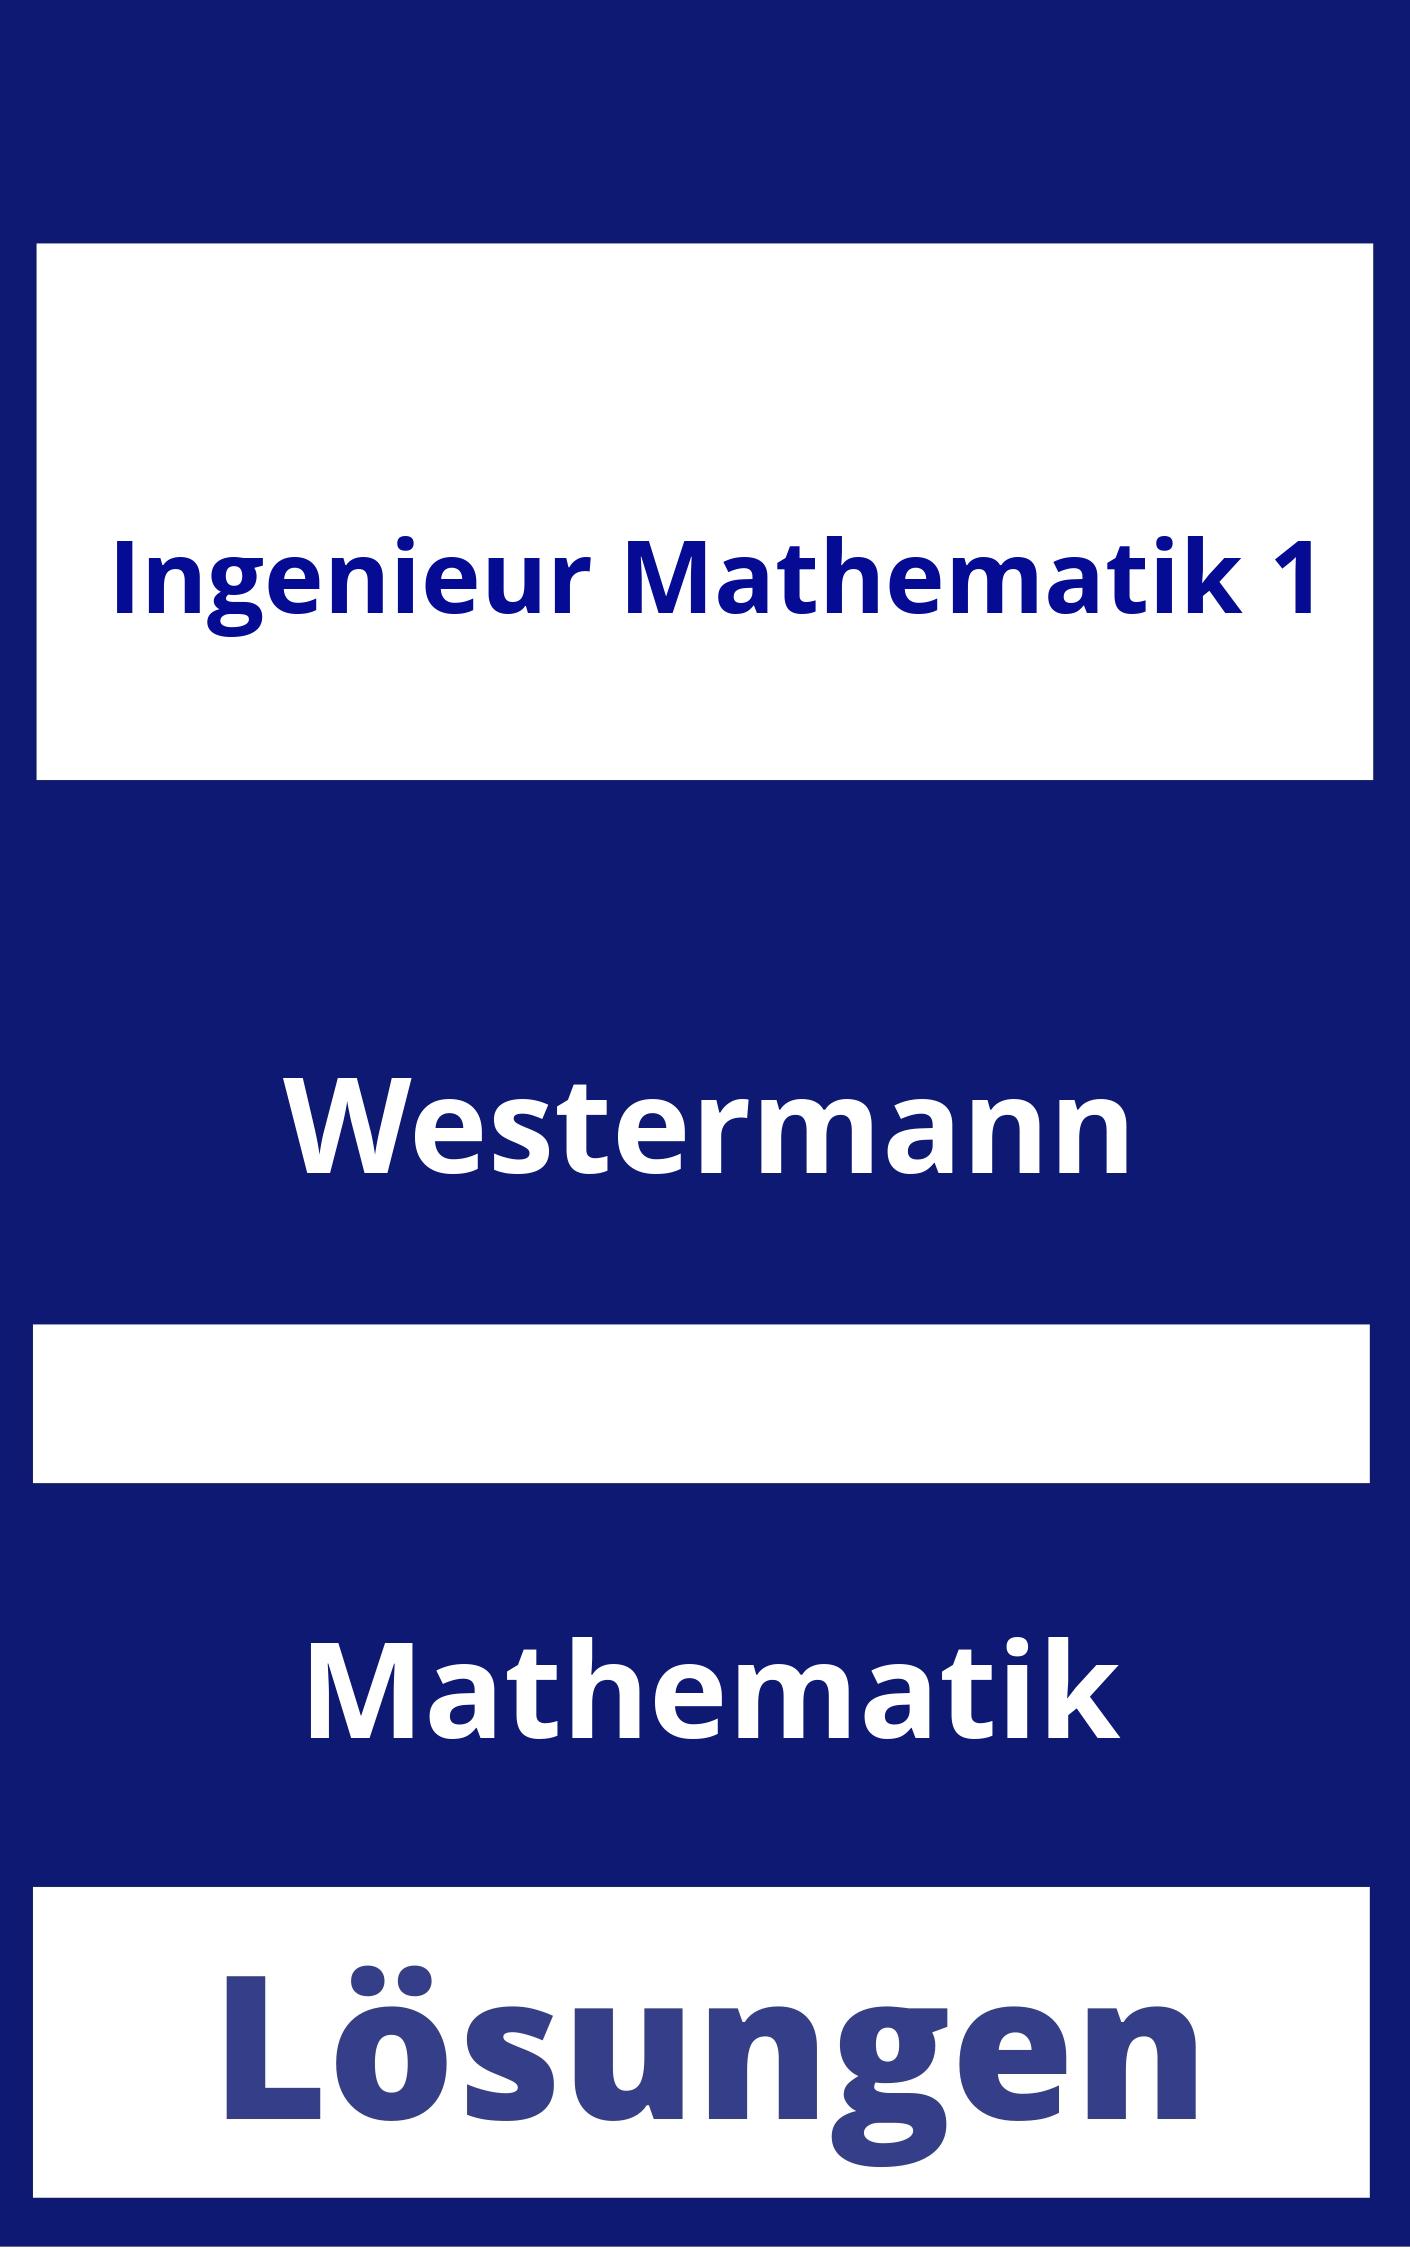 Ingenieur Mathematik 1 Lösungen PDF